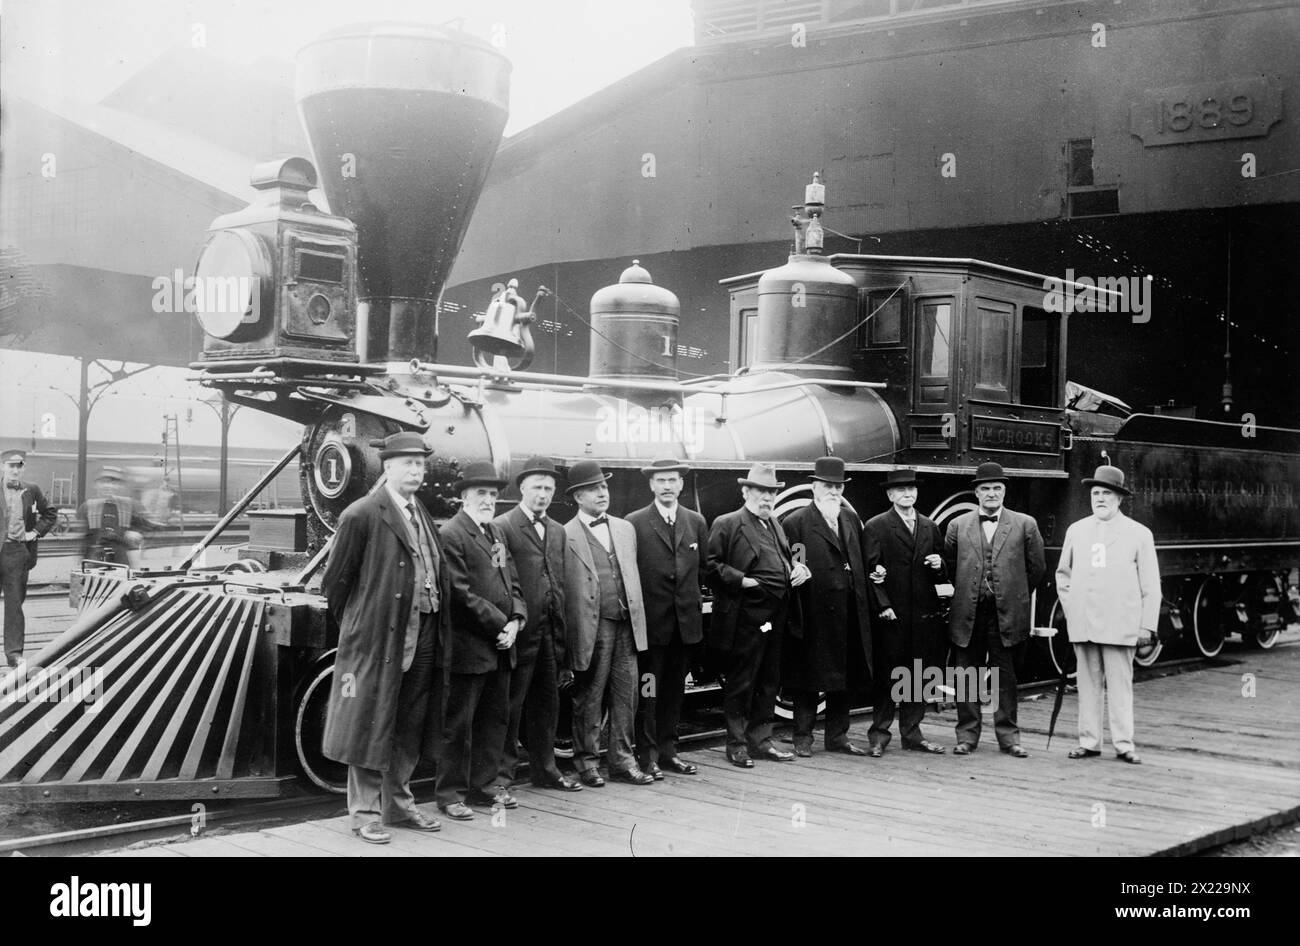 William Crooks, zwischen 1910 und 1915. Zeigt die William Crooks, die erste Lokomotive in Minnesota, die 1861 gebaut wurde. Der sechste Mann von links ist James Jerome Hill (1838–1916), der Präsident der Great Northern Railway war. Stockfoto